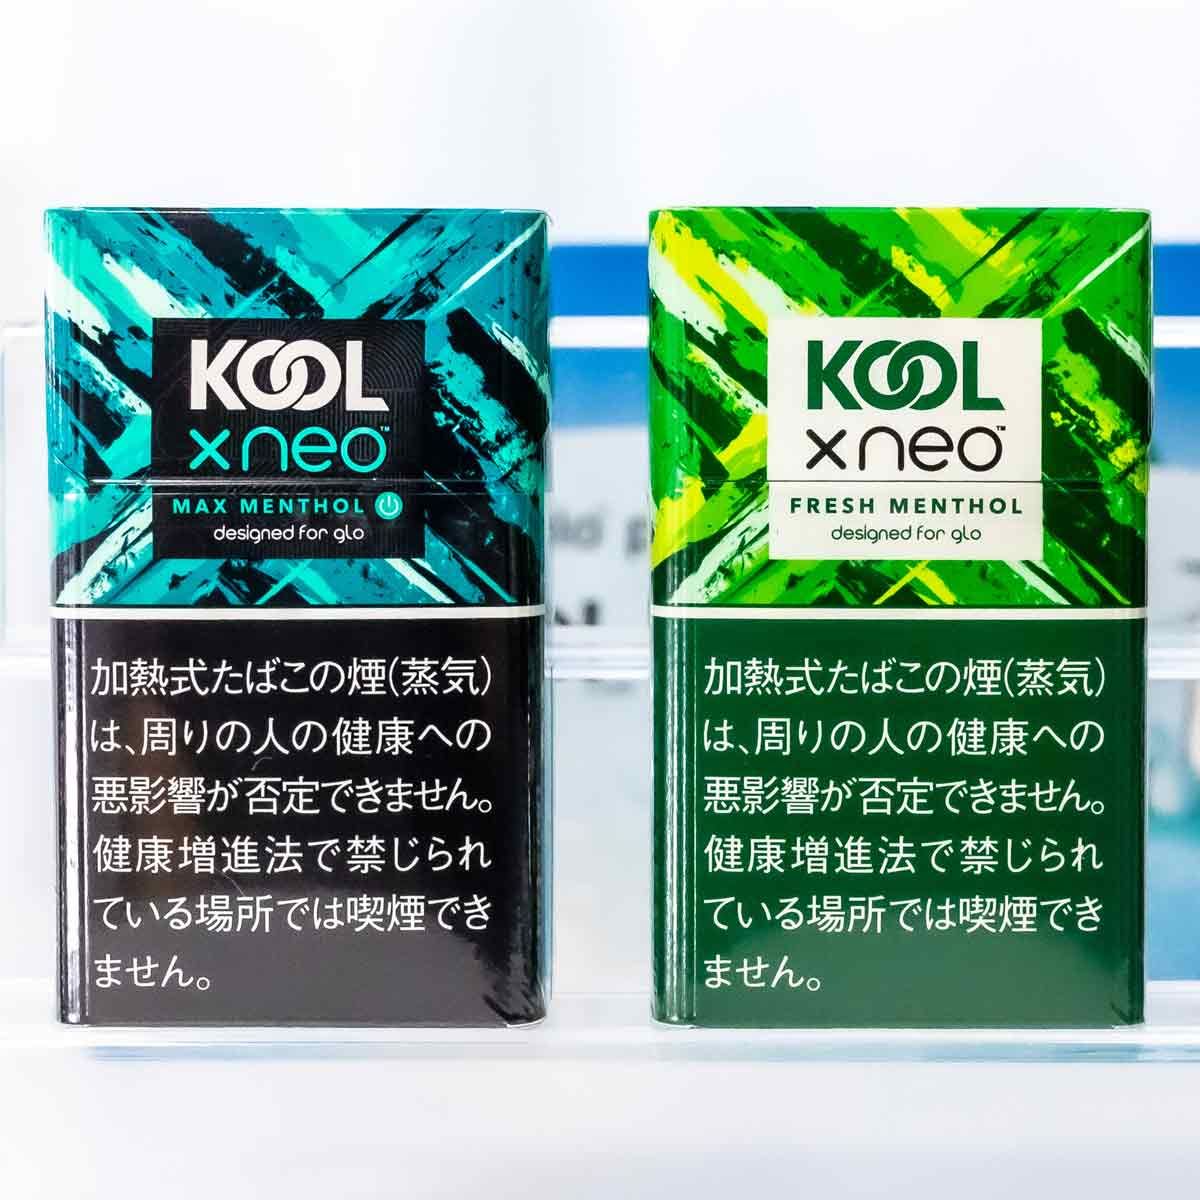 人気メンソール銘柄「KOOL」が加熱式タバコ「グロー」についに登場